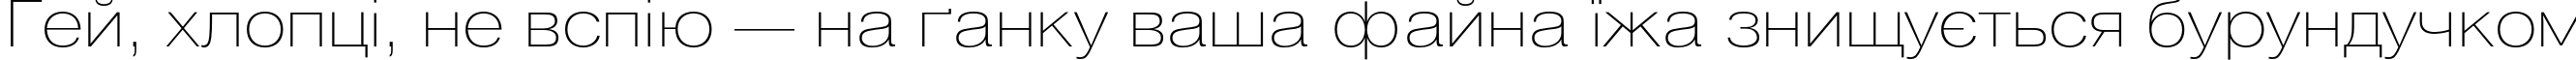 Пример написания шрифтом HeliosExtThin текста на украинском